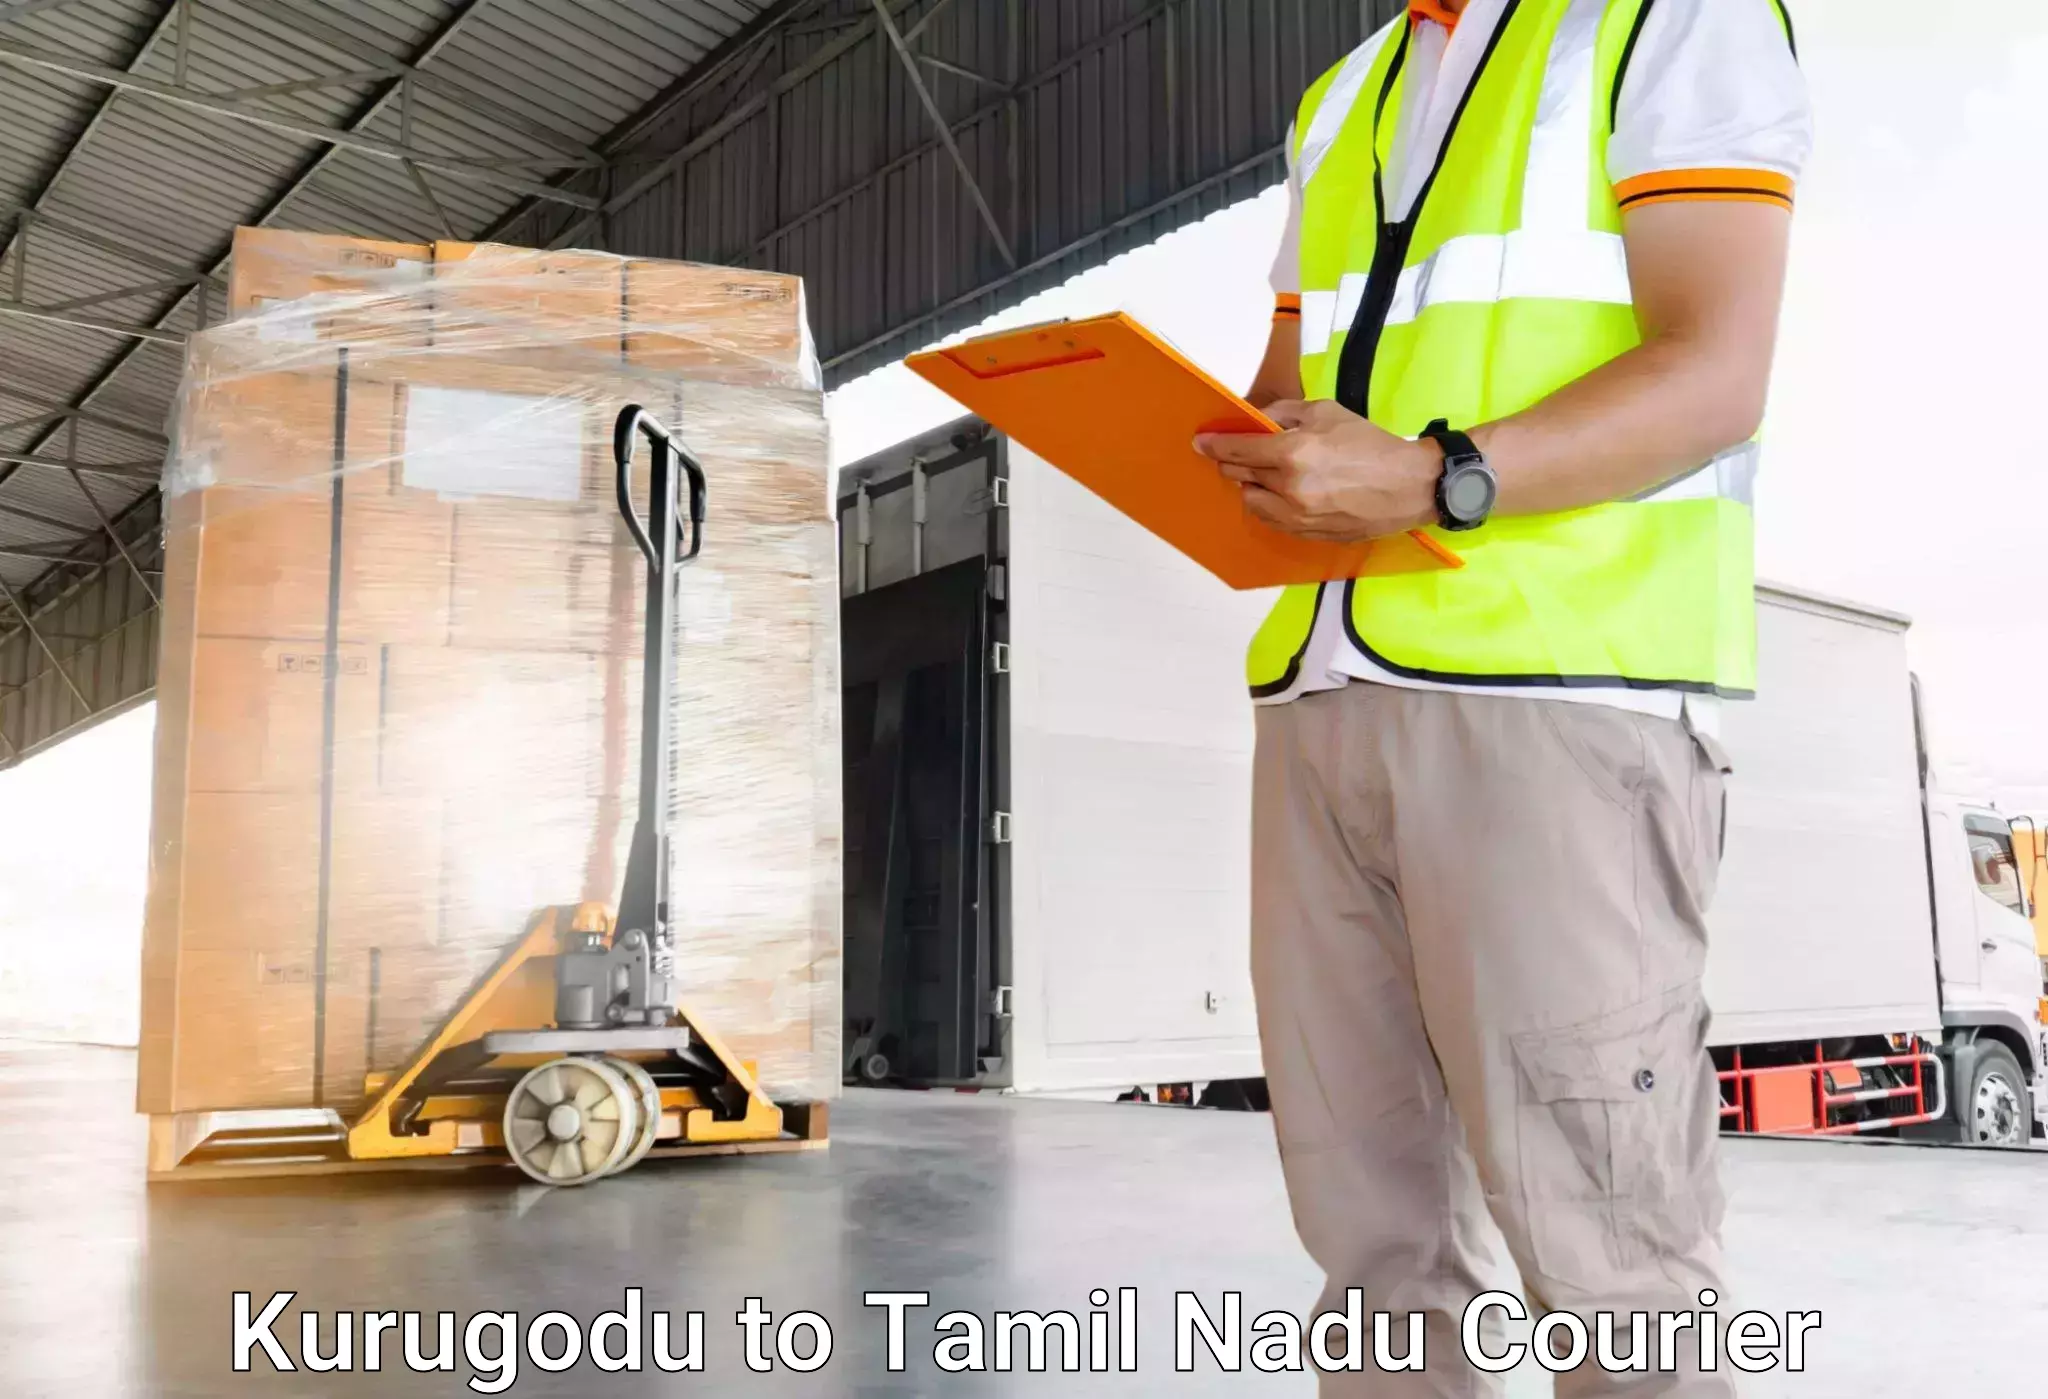 Luggage delivery optimization Kurugodu to Bharathiar University Coimbatore